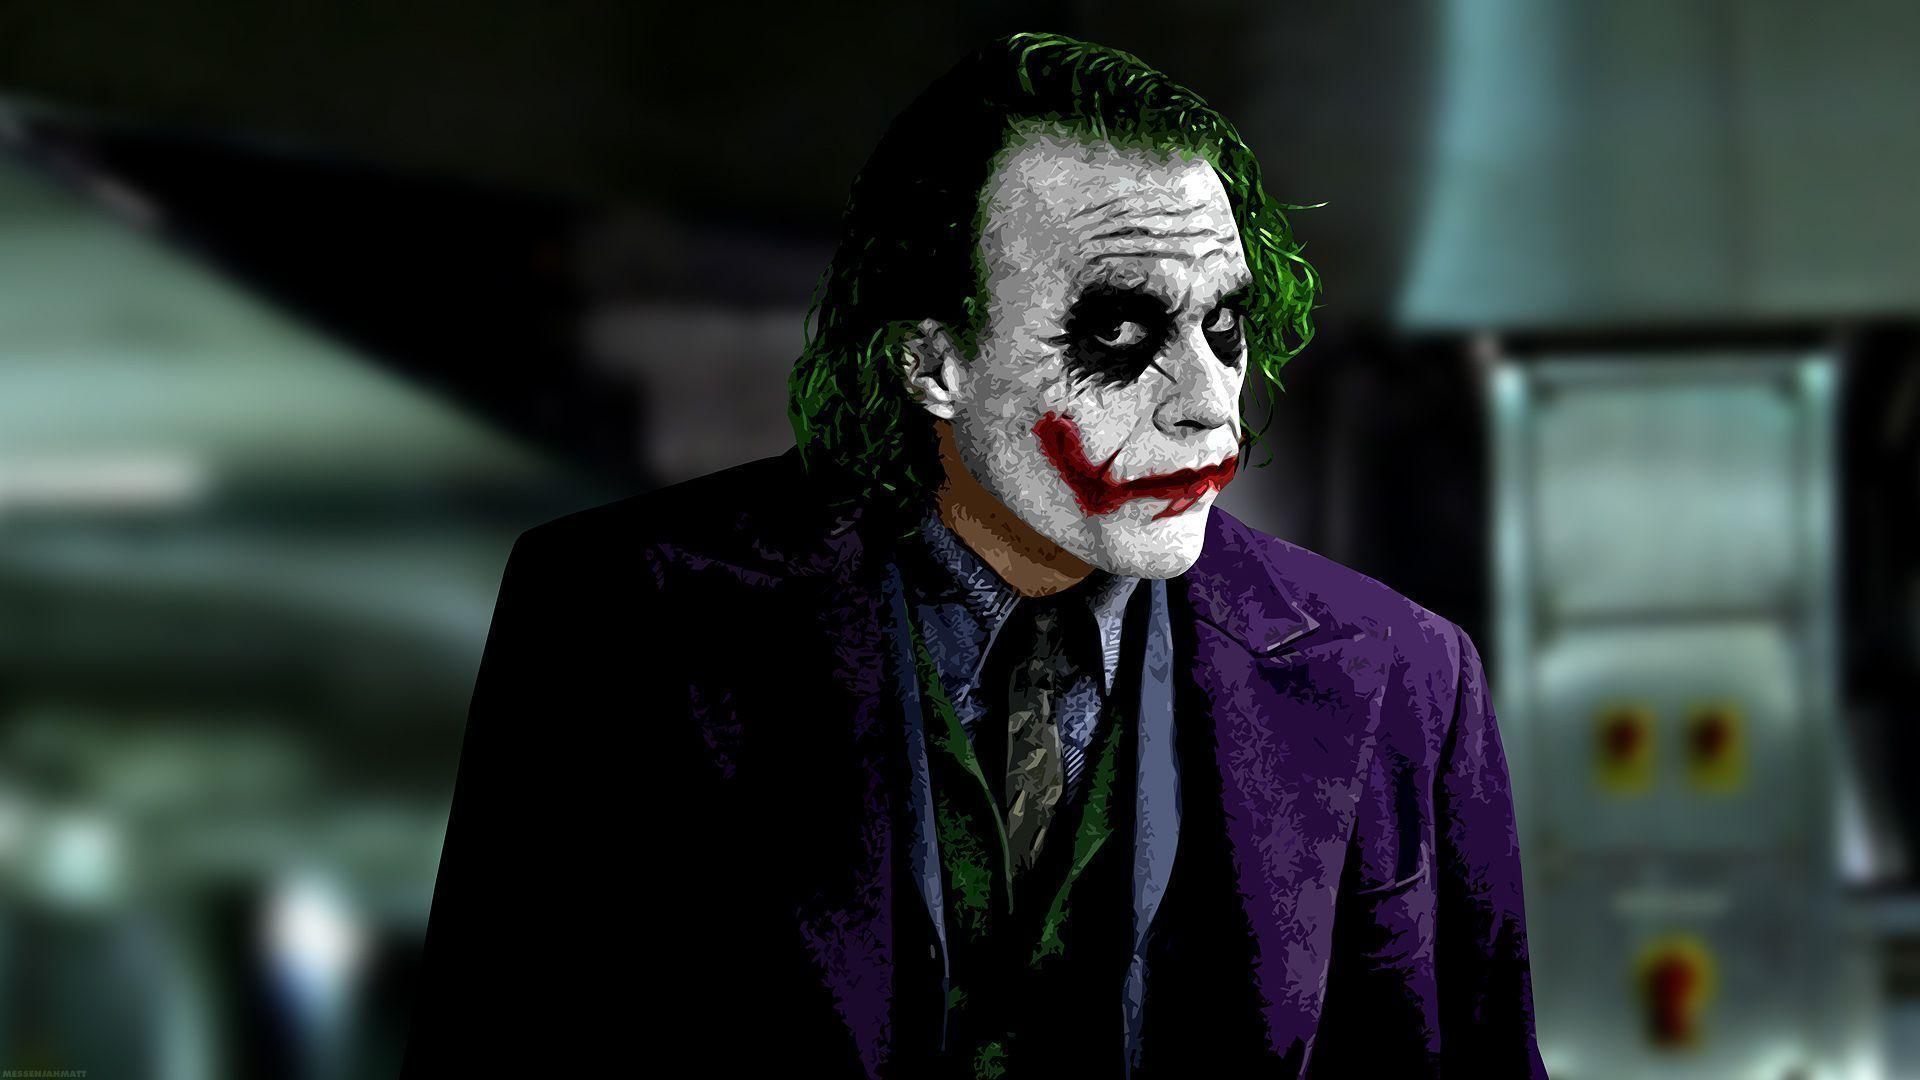 image For > Joker Dark Knight Wallpaper